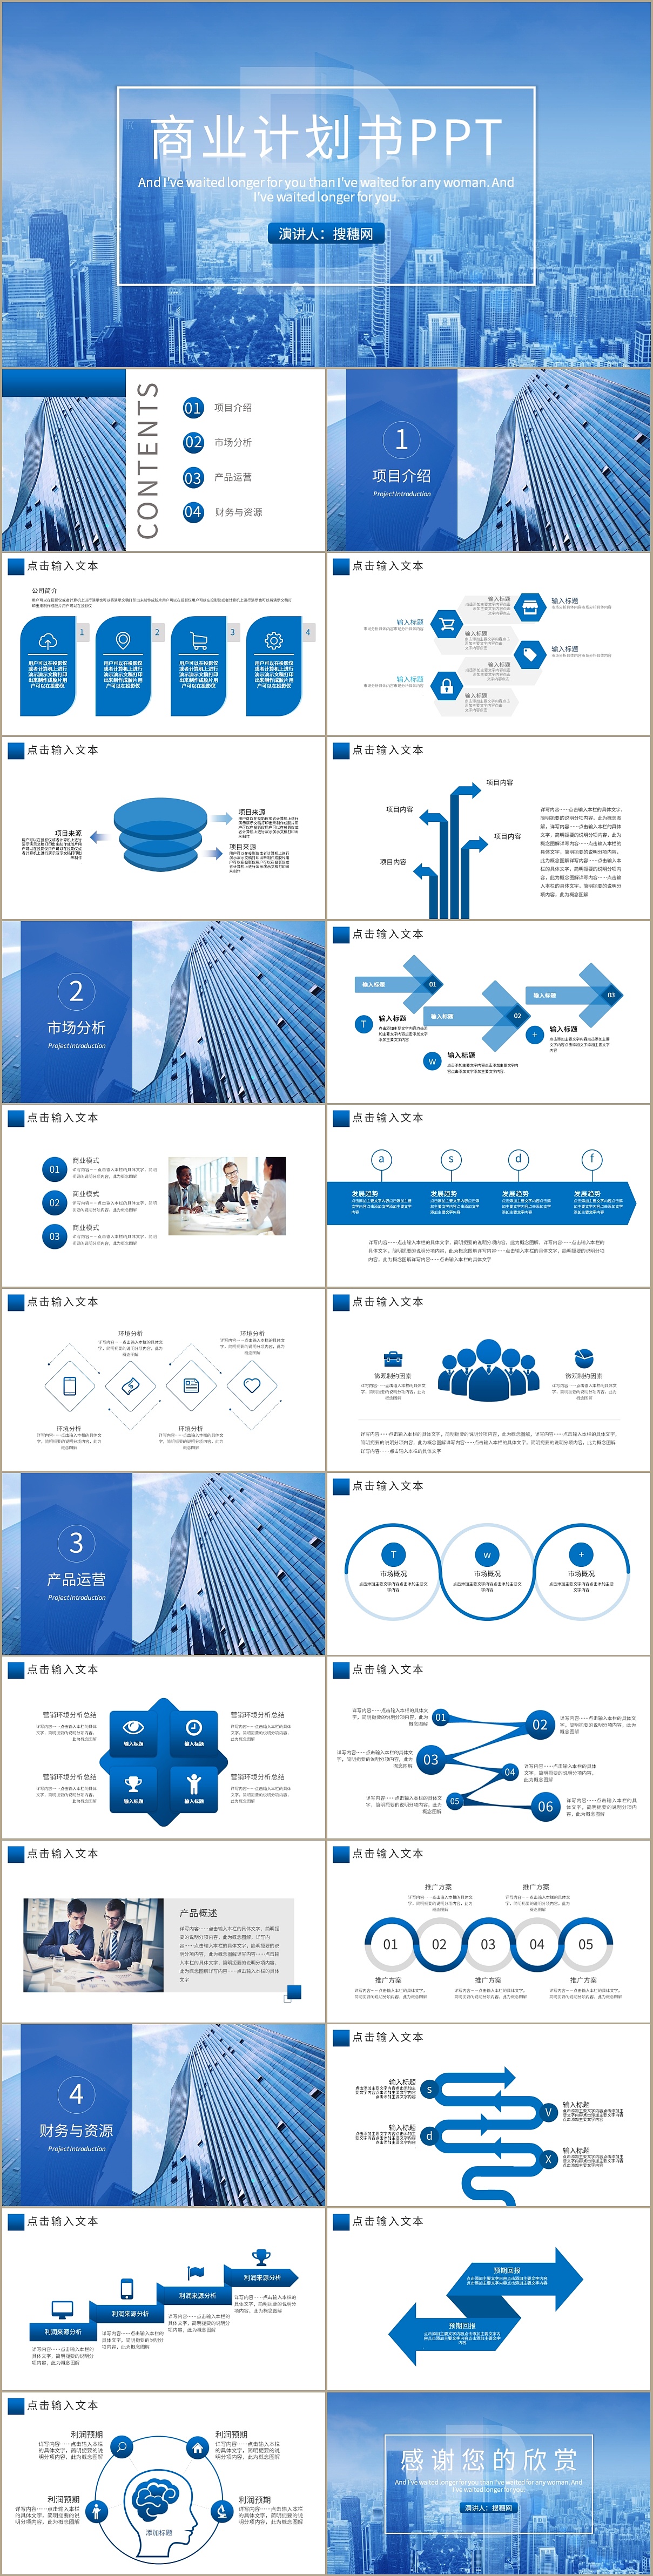 蓝色时尚商业计划书项目介绍商务策划ppt模板